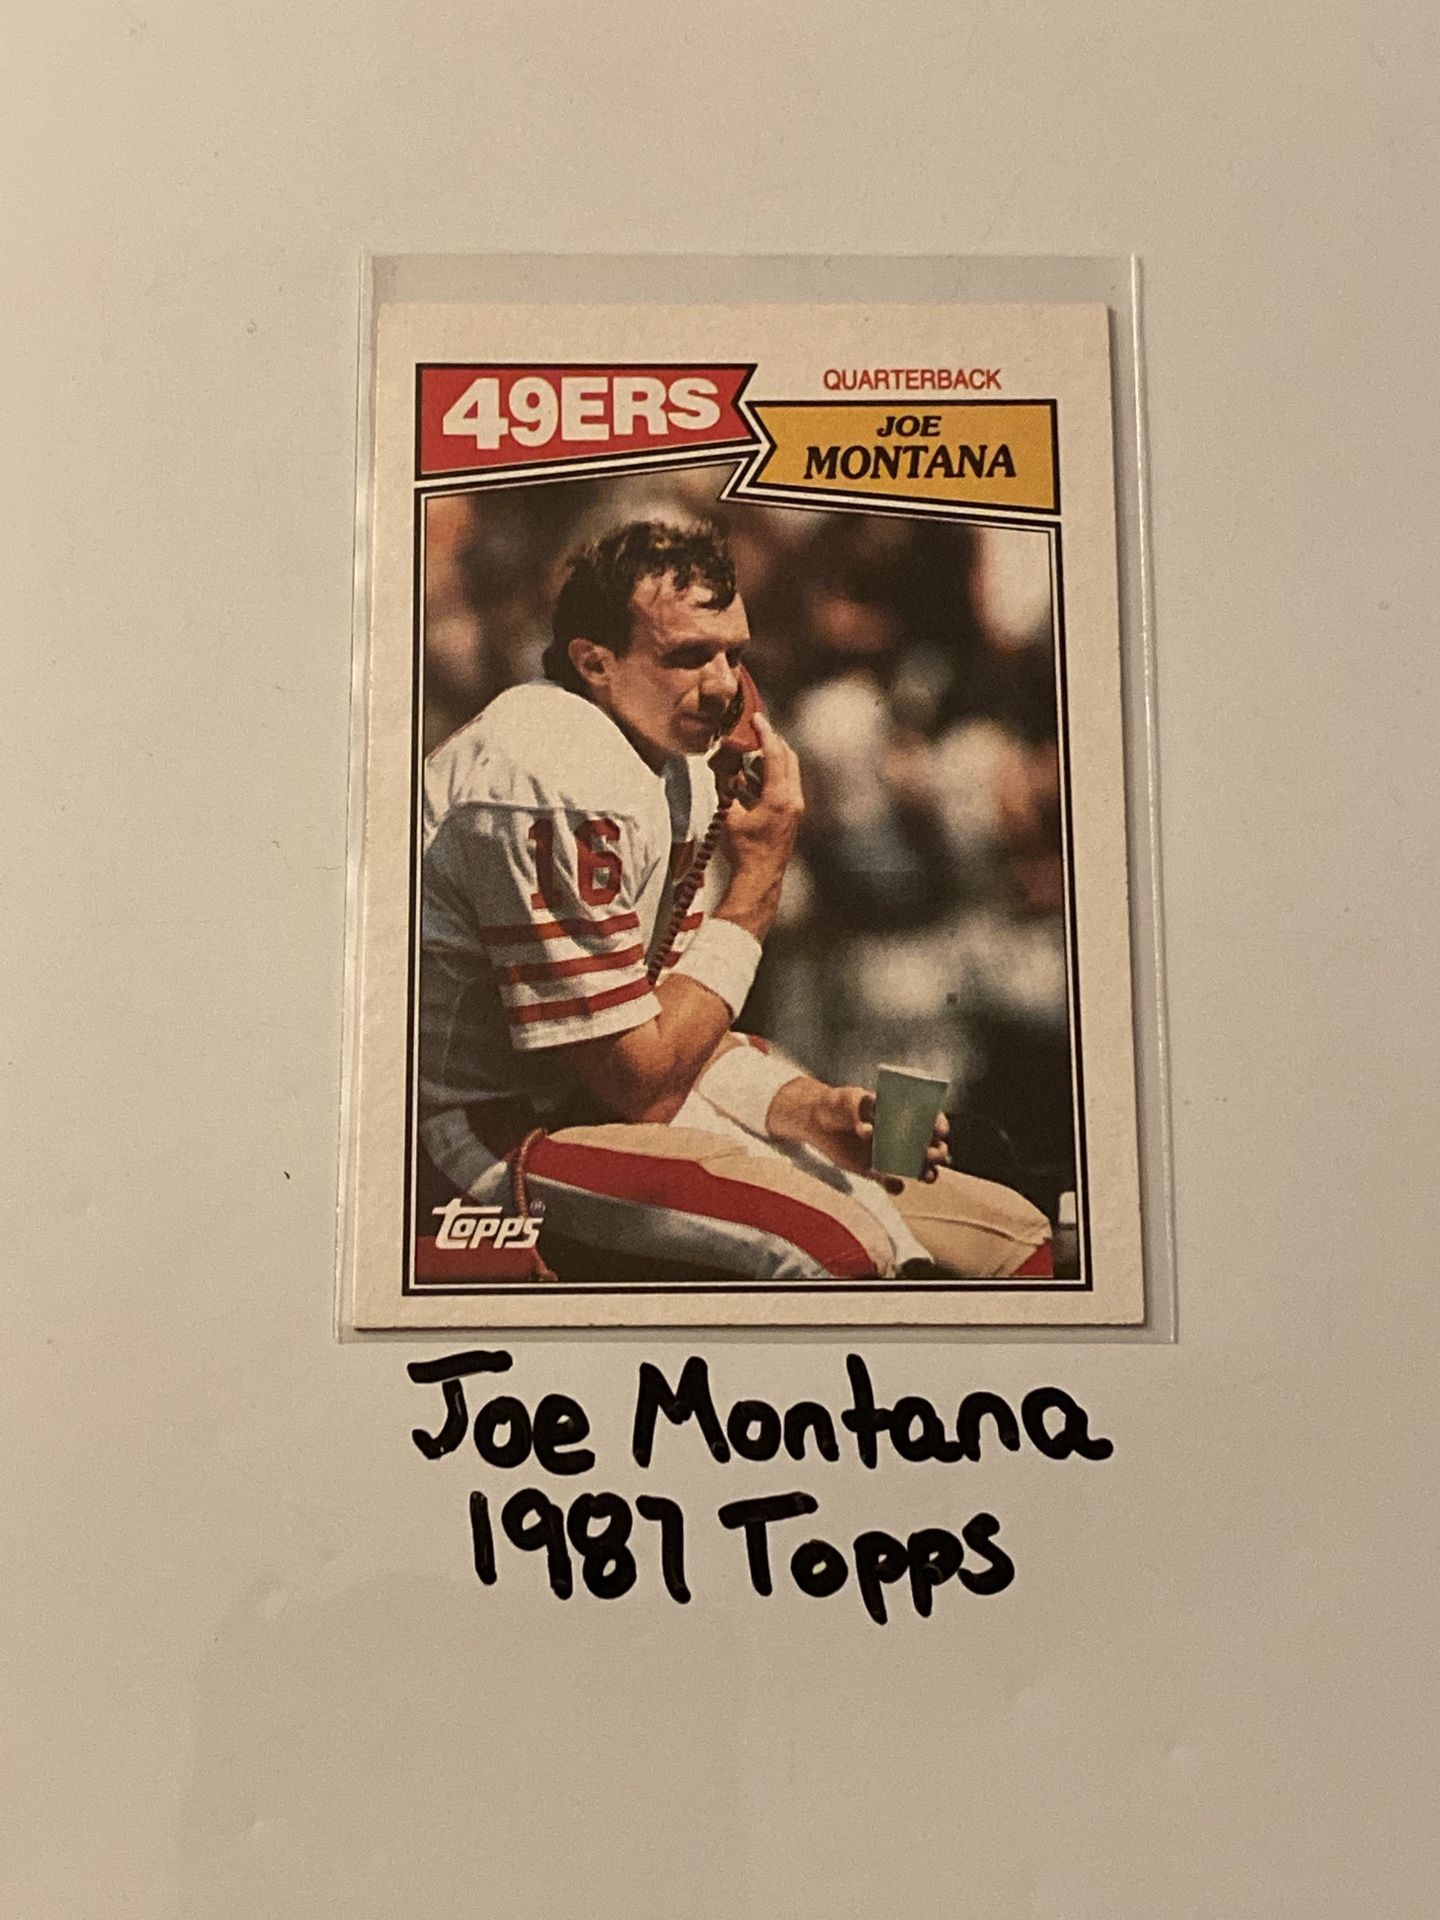 Joe Montana San Francisco 49ers Hall of Fame QB 1987 Topps Card. 